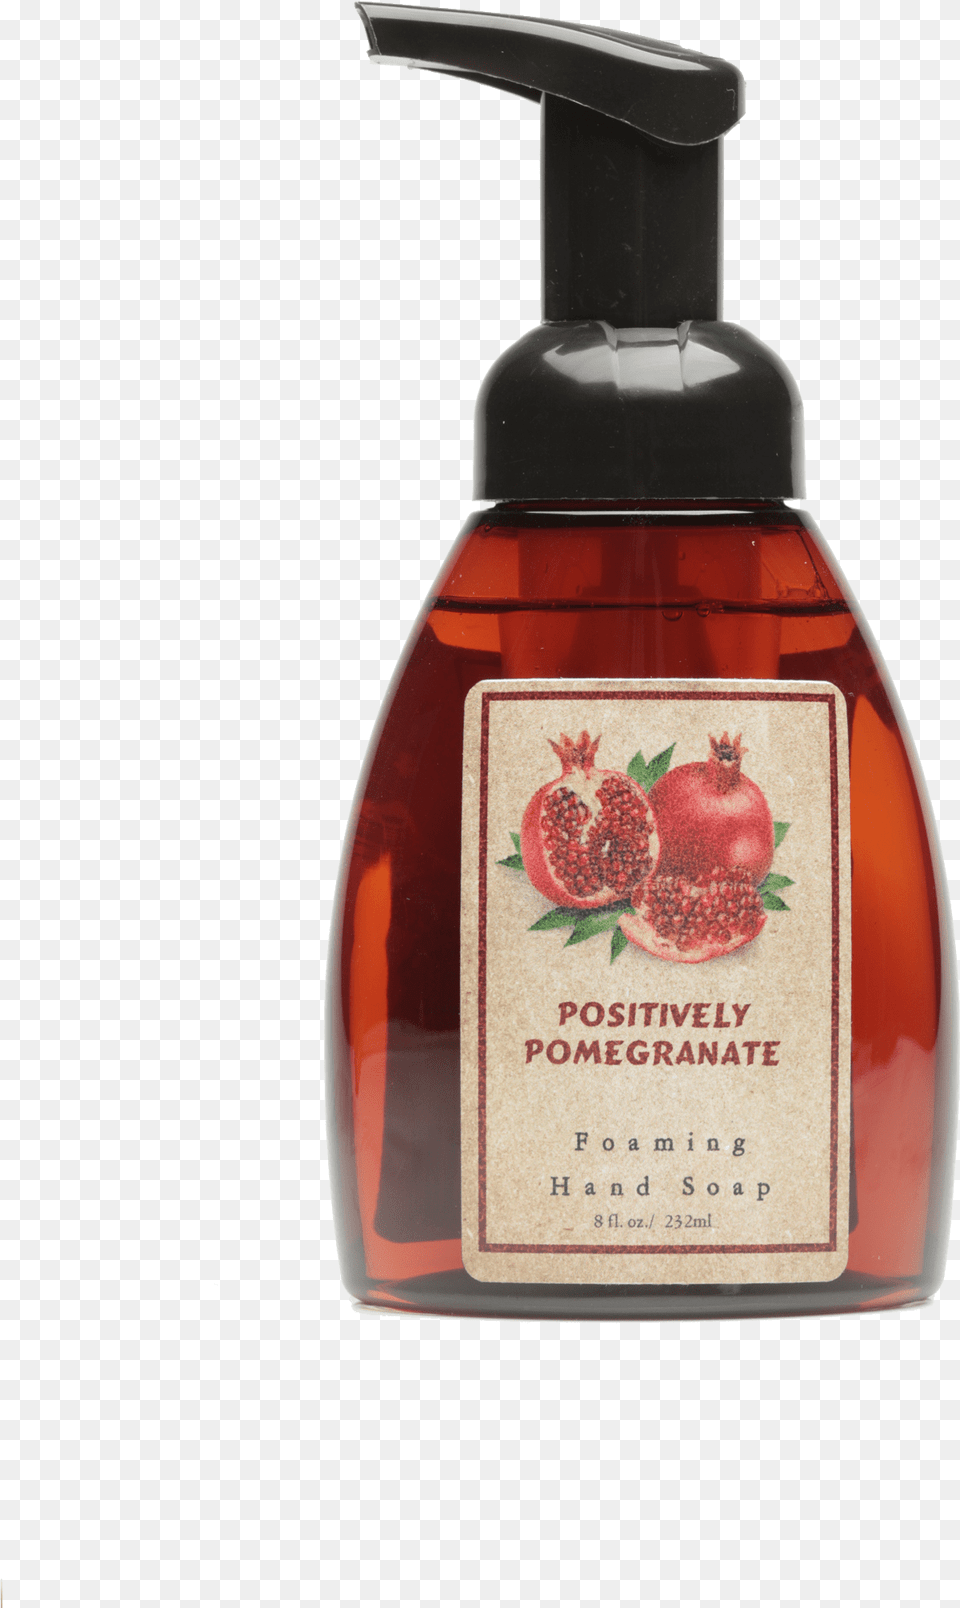 Foaming Hand Soap False Pomegranate Premium Fragrance Oil 16 Oz Bottle, Food, Ketchup Png Image